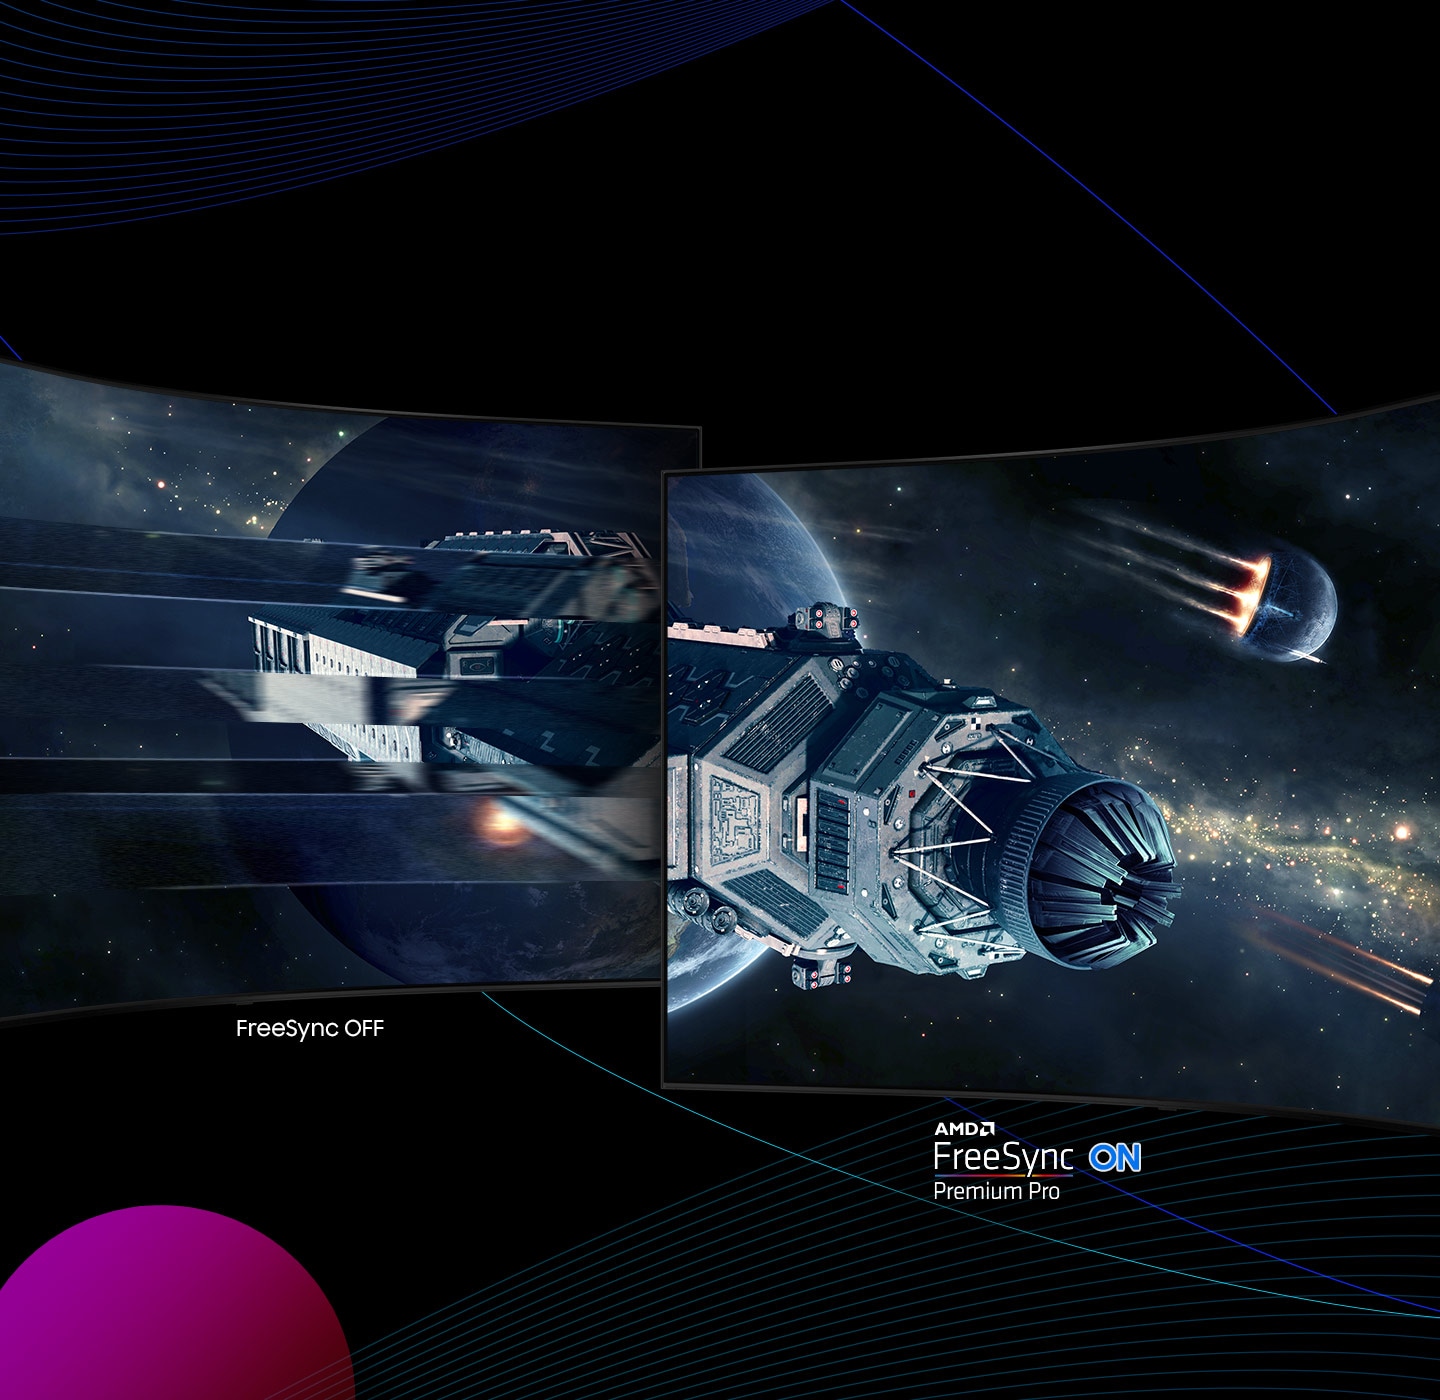 Dva monitorja drug ob drugem prikazujeta vesoljsko ladjo, ki leti skozi vesolje od leve proti desni med obema zaslonoma. Leva stran prikazuje »FreeSync Off«, medtem ko desna stran prikazuje »AMD FreeSync Premium Pro On«.